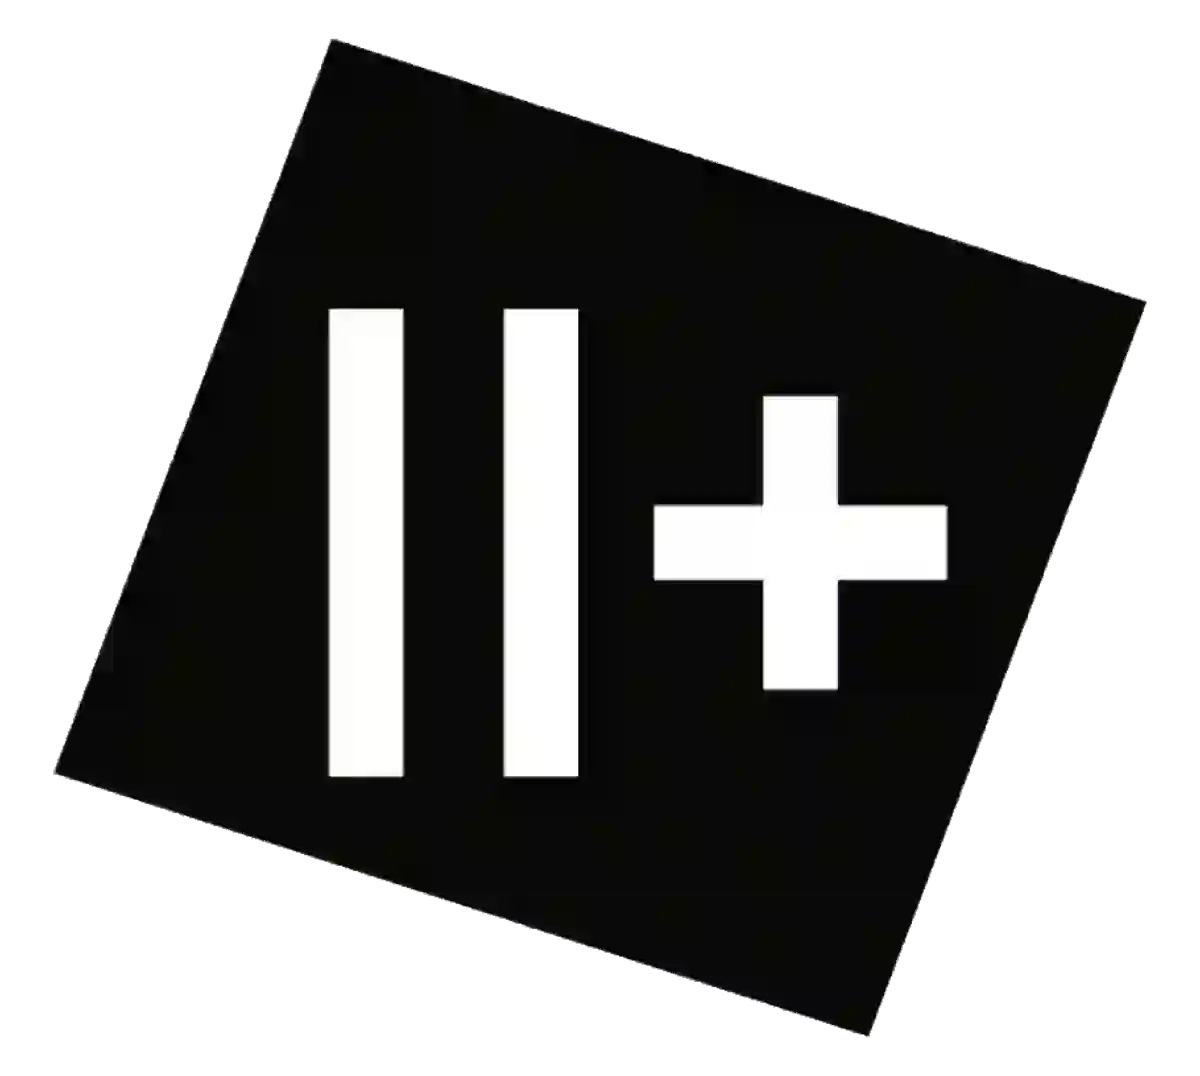 zweiplus - logo